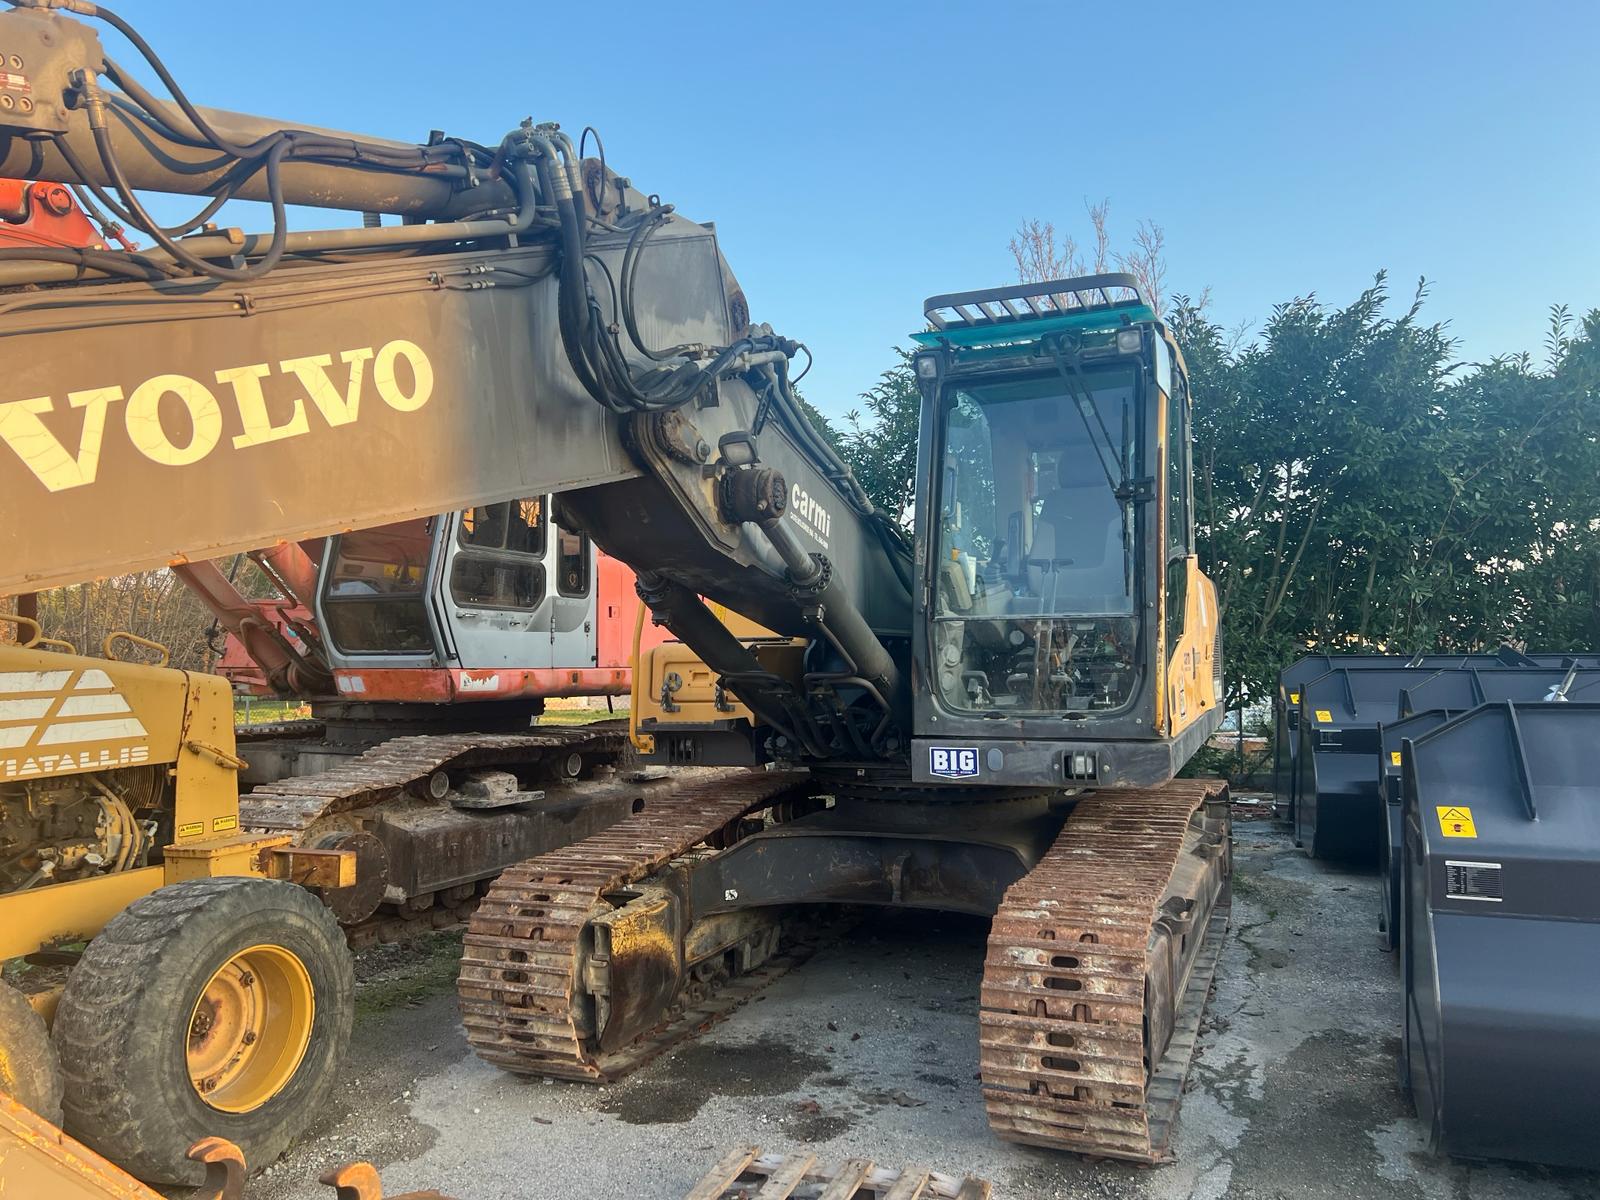 Escavatore Volvo EC235CNL 9400 Ore Impianti Completi  in vendita - foto 1